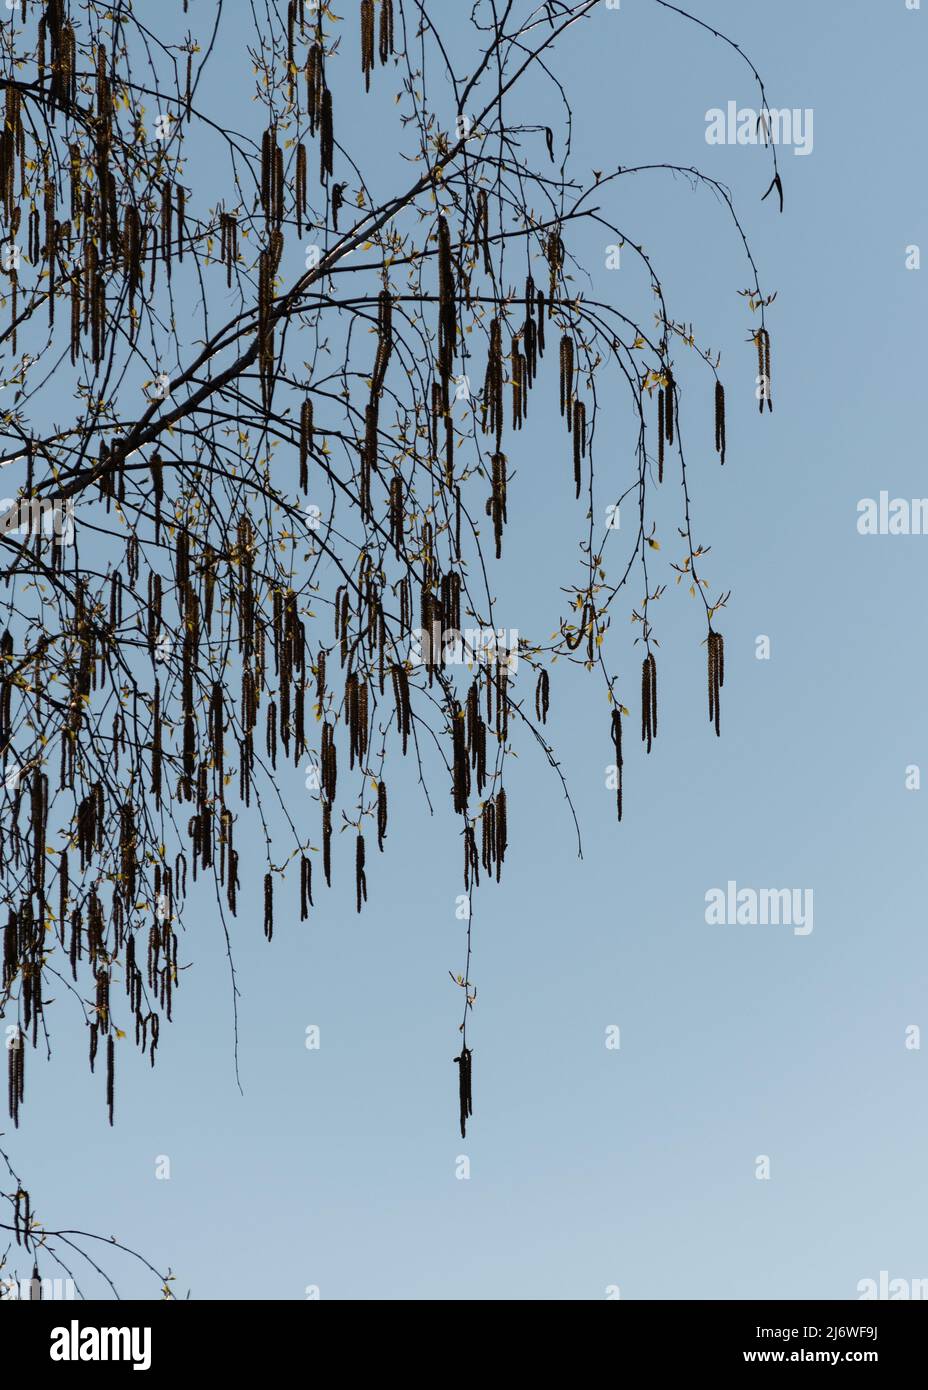 Birkenzweig Silhouette, Zweig mit neuen Blättern und hängende catkin gegen blauen Himmel Stockfoto